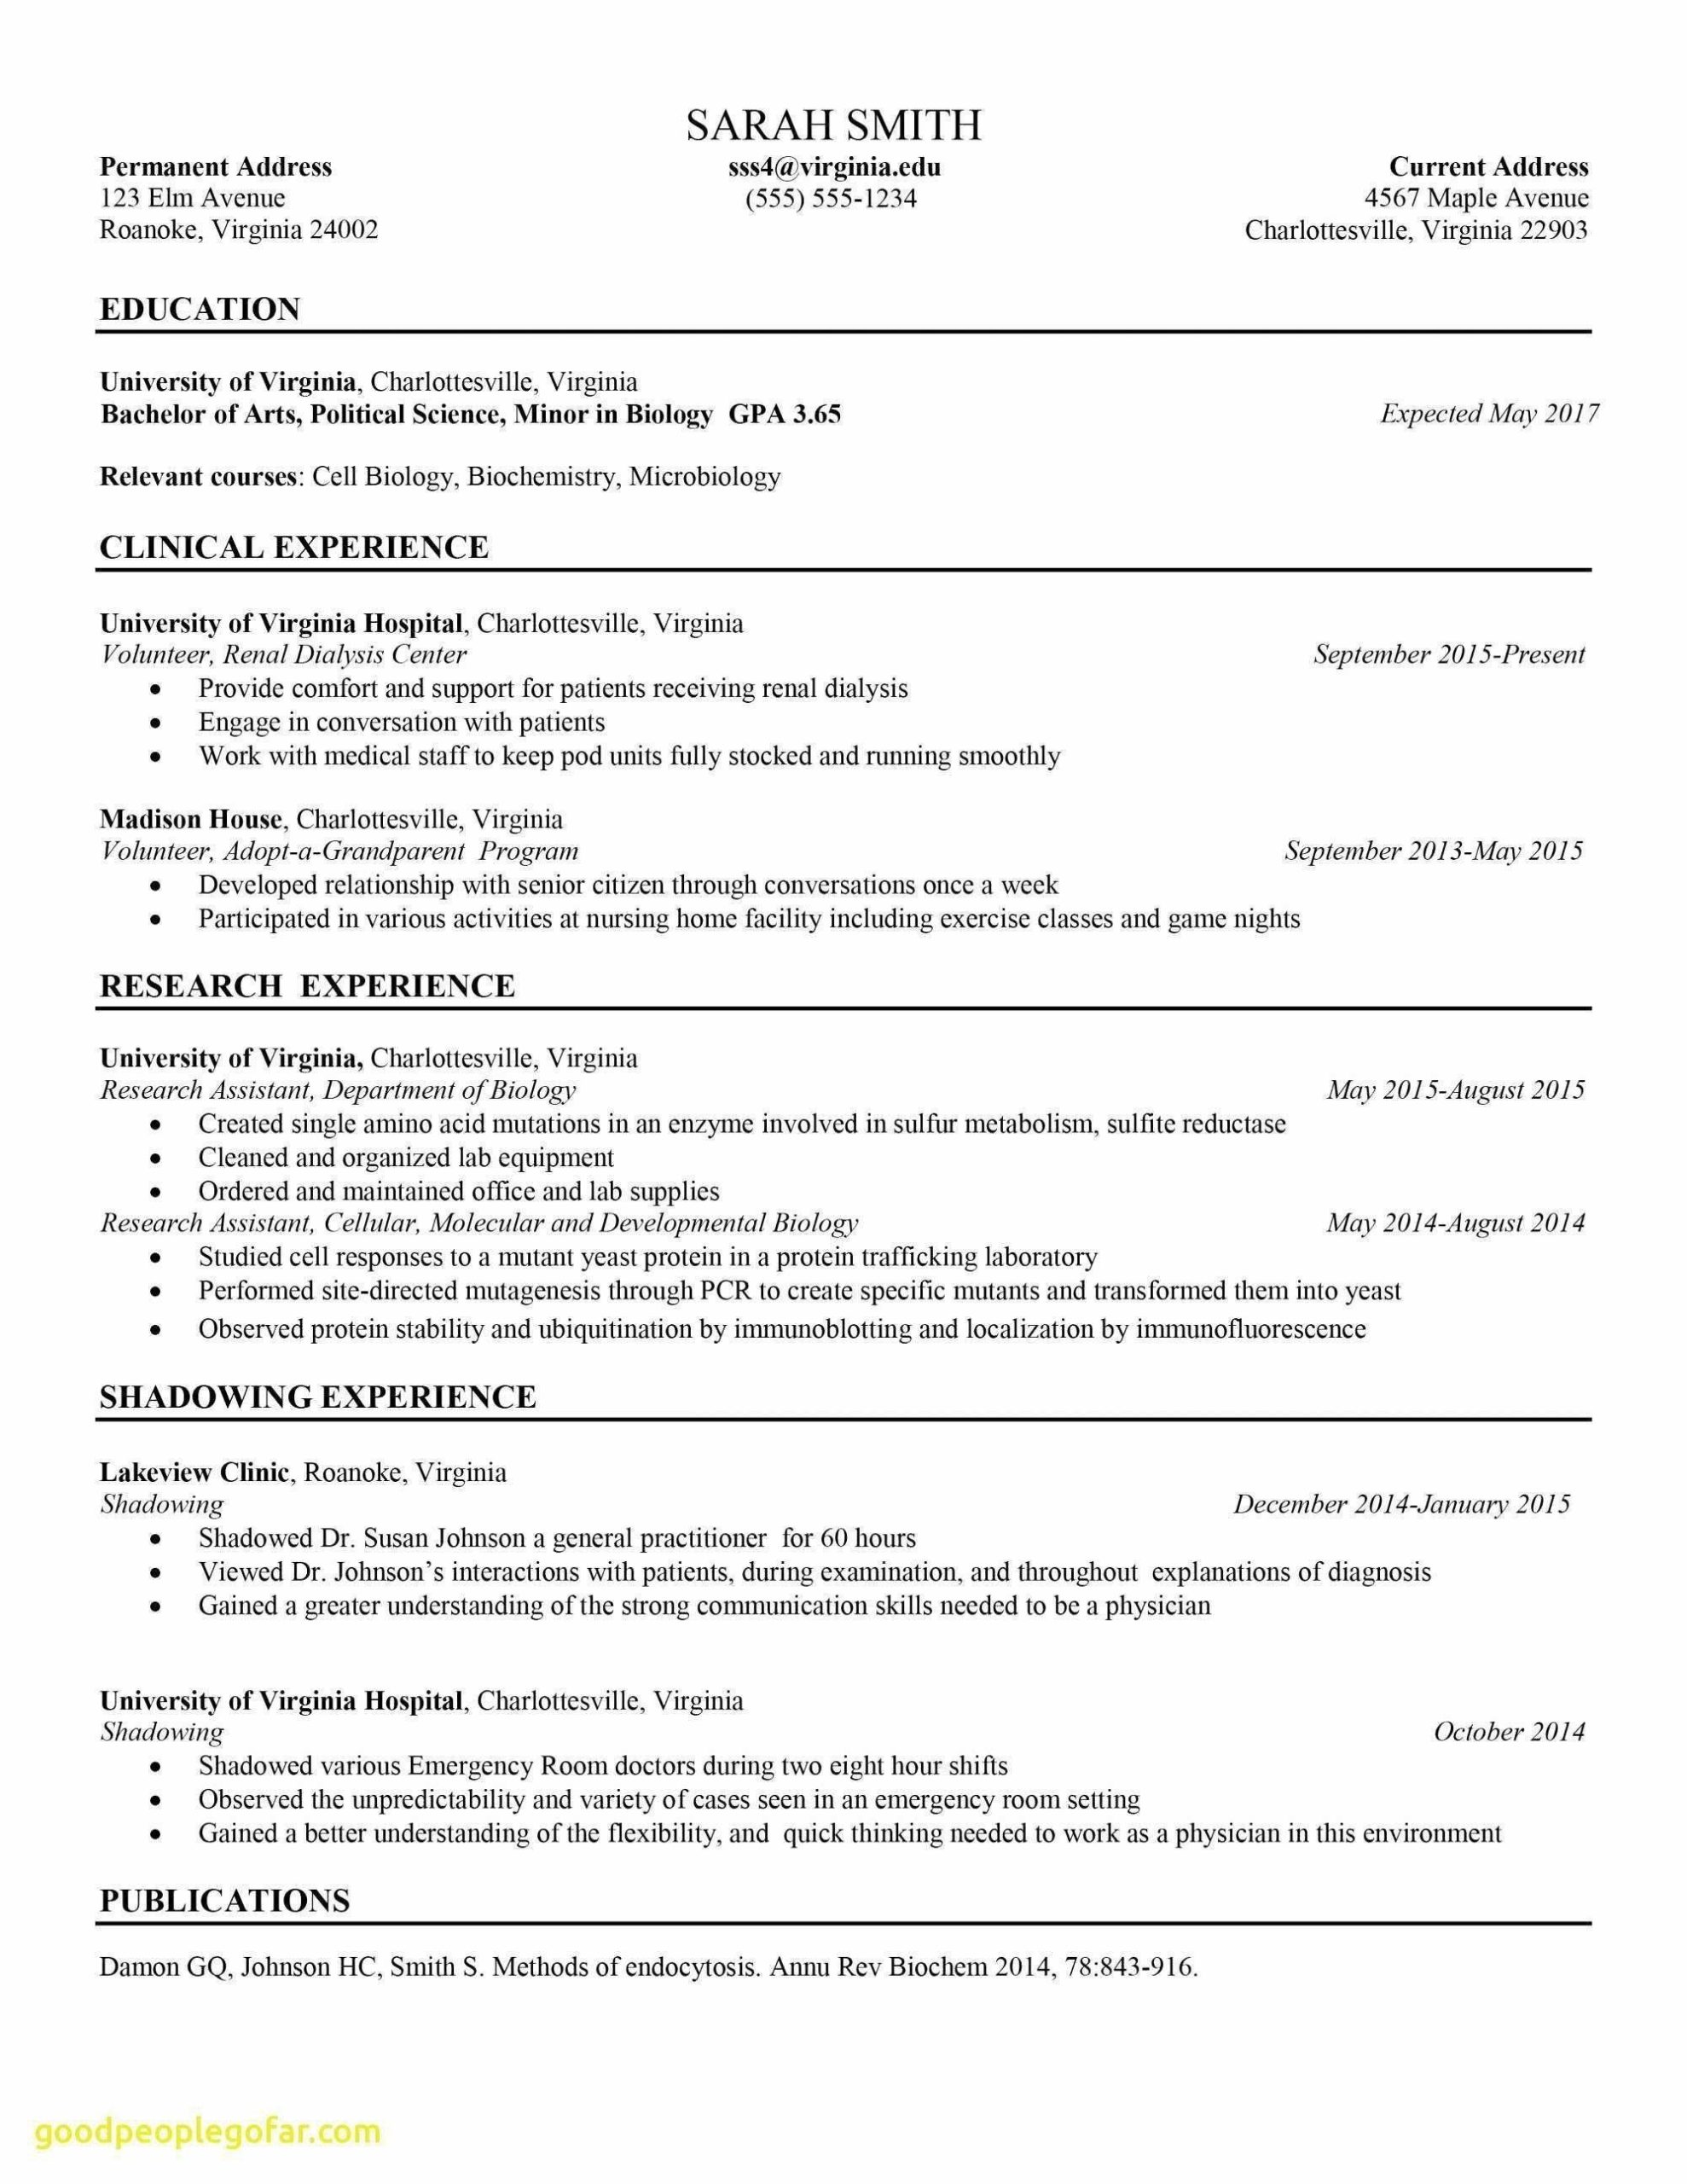 Resume Activities Examples